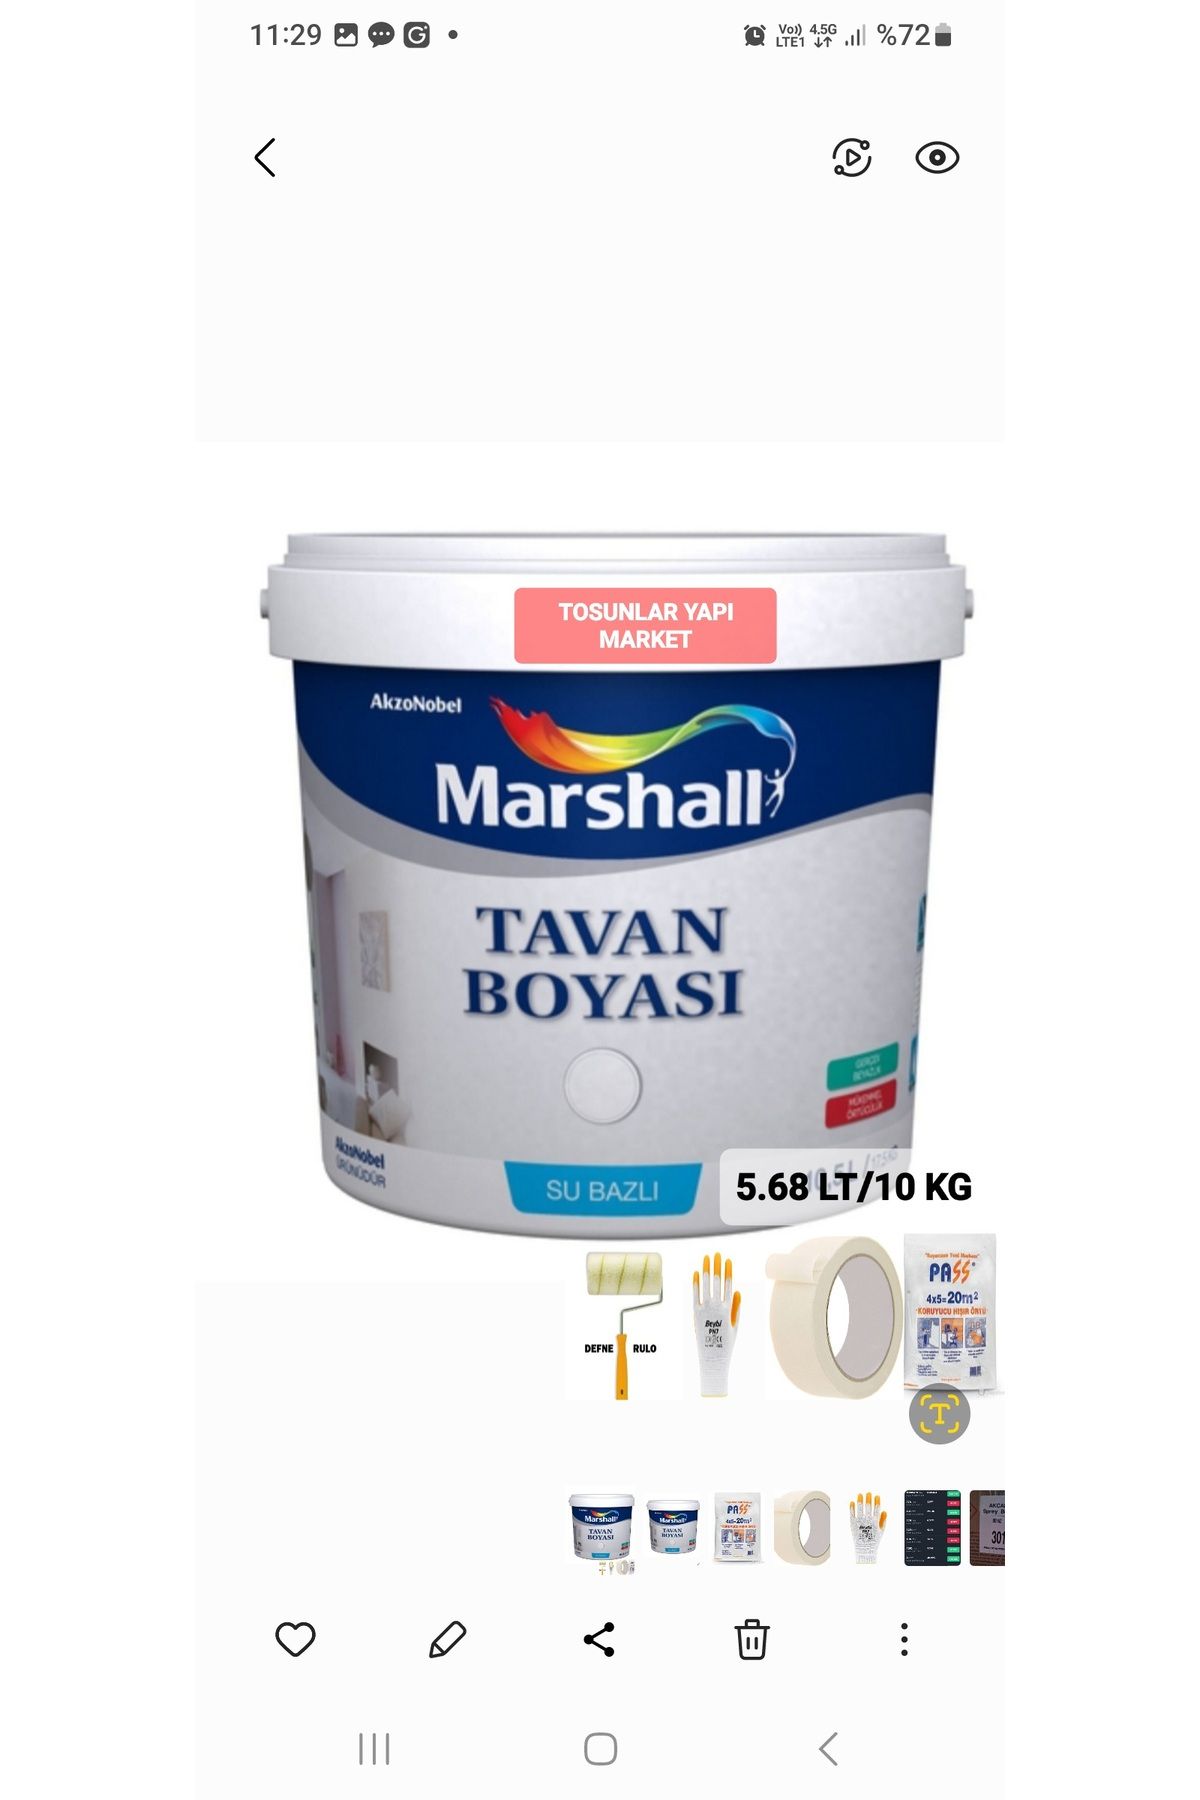 Marshall TAVAN BOYASI 5.68 LT 10 KG